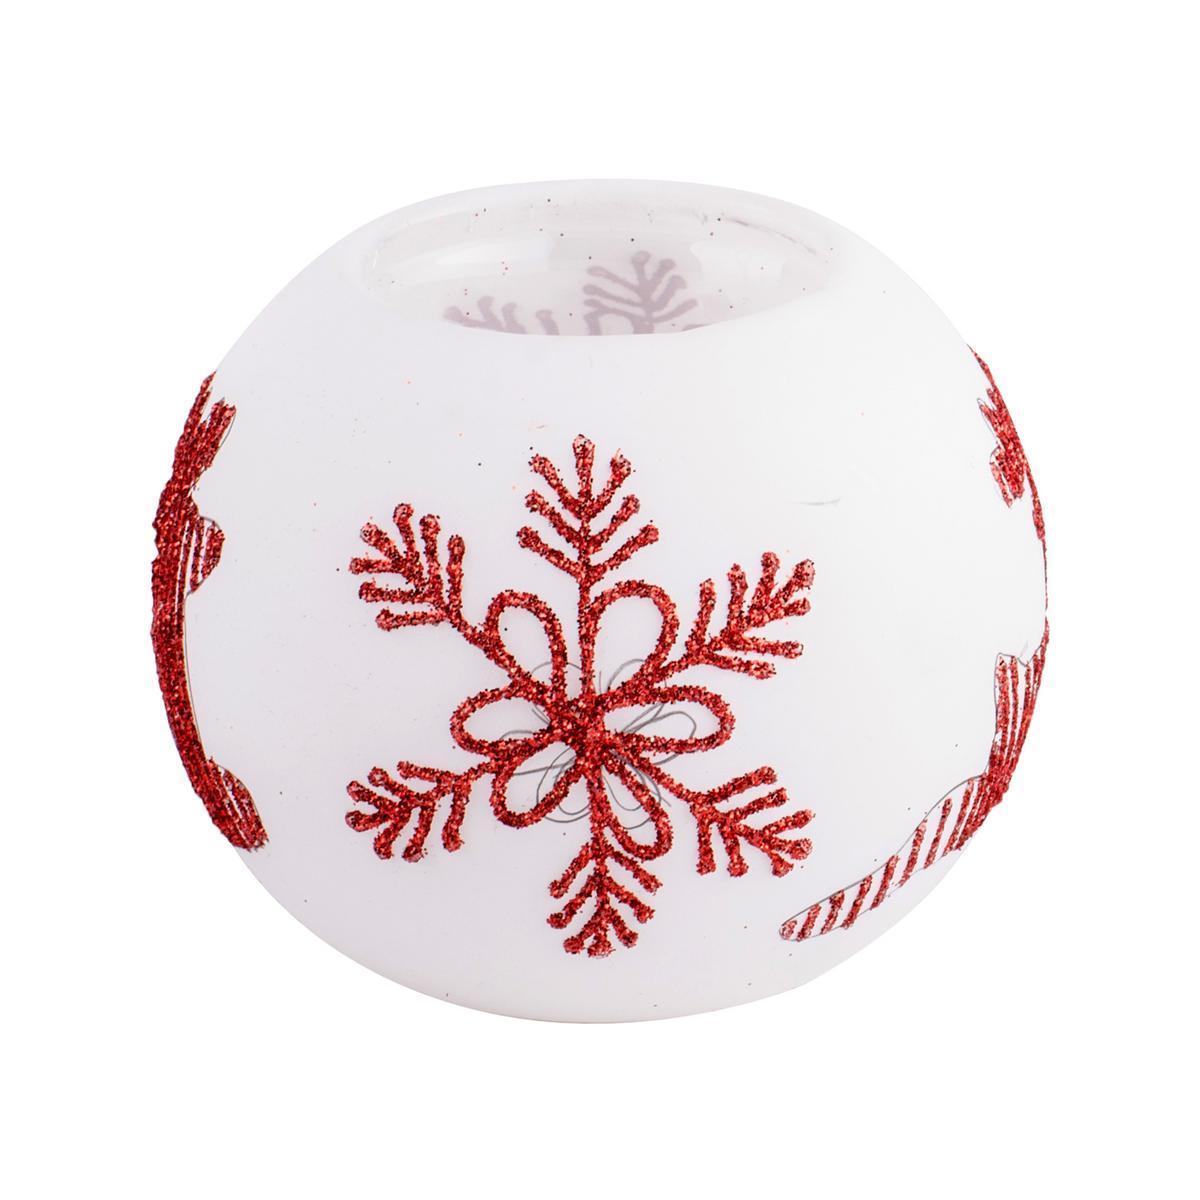 Photophore de Noël rond - Verre - Ø 8 x H 6 cm - Blanc et rouge